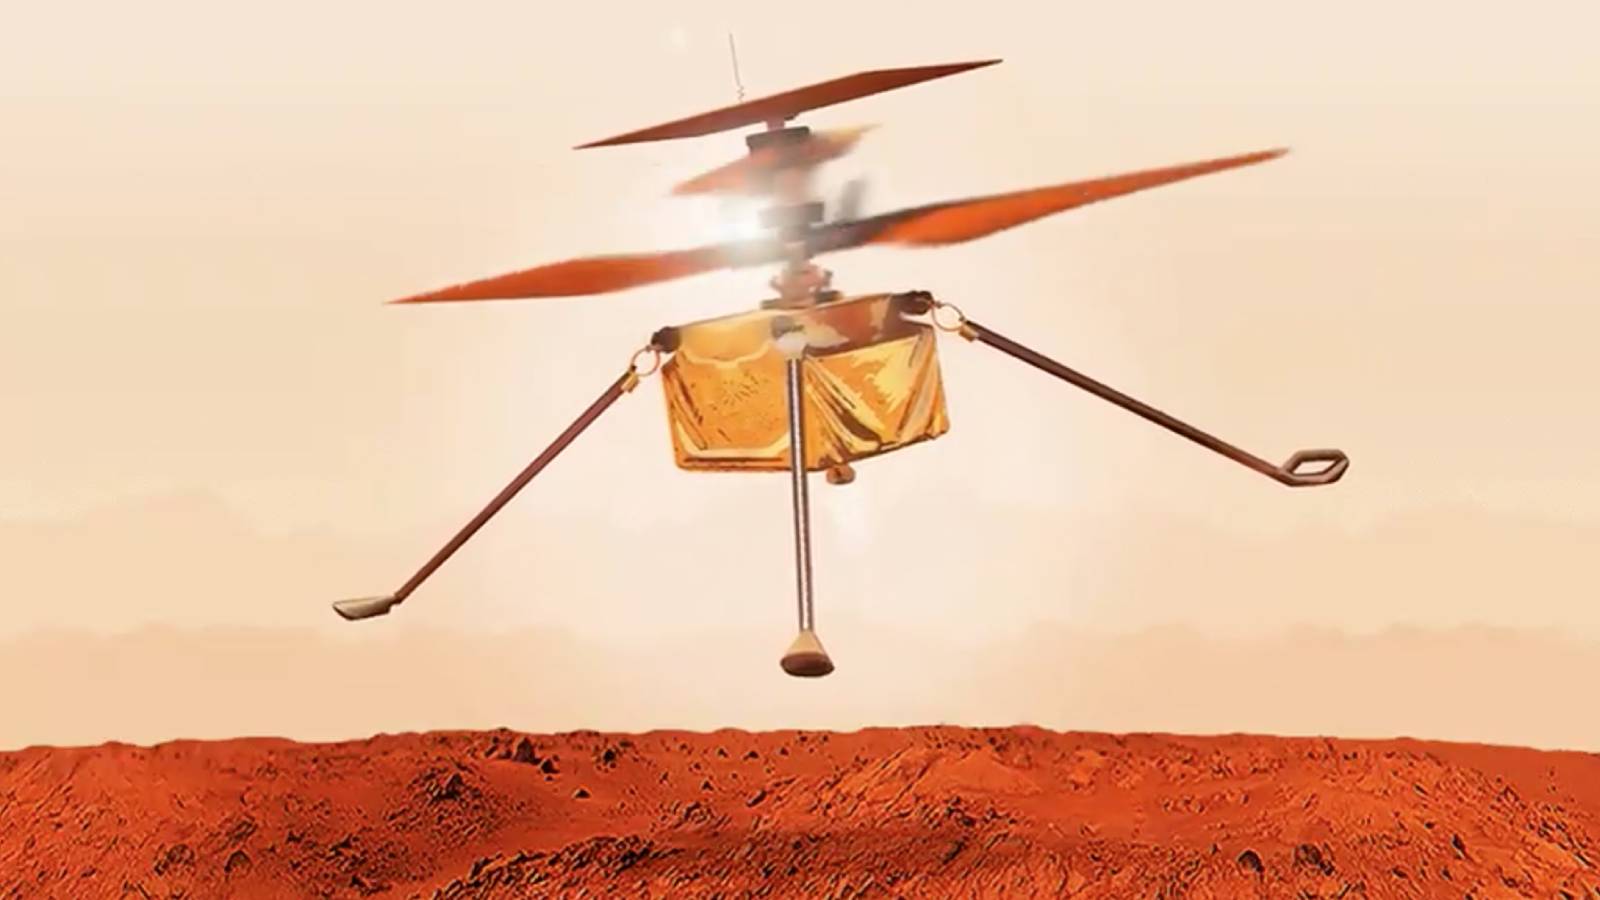 Ingenuity : la NASA prolonge la mission de son hélicoptère sur Mars